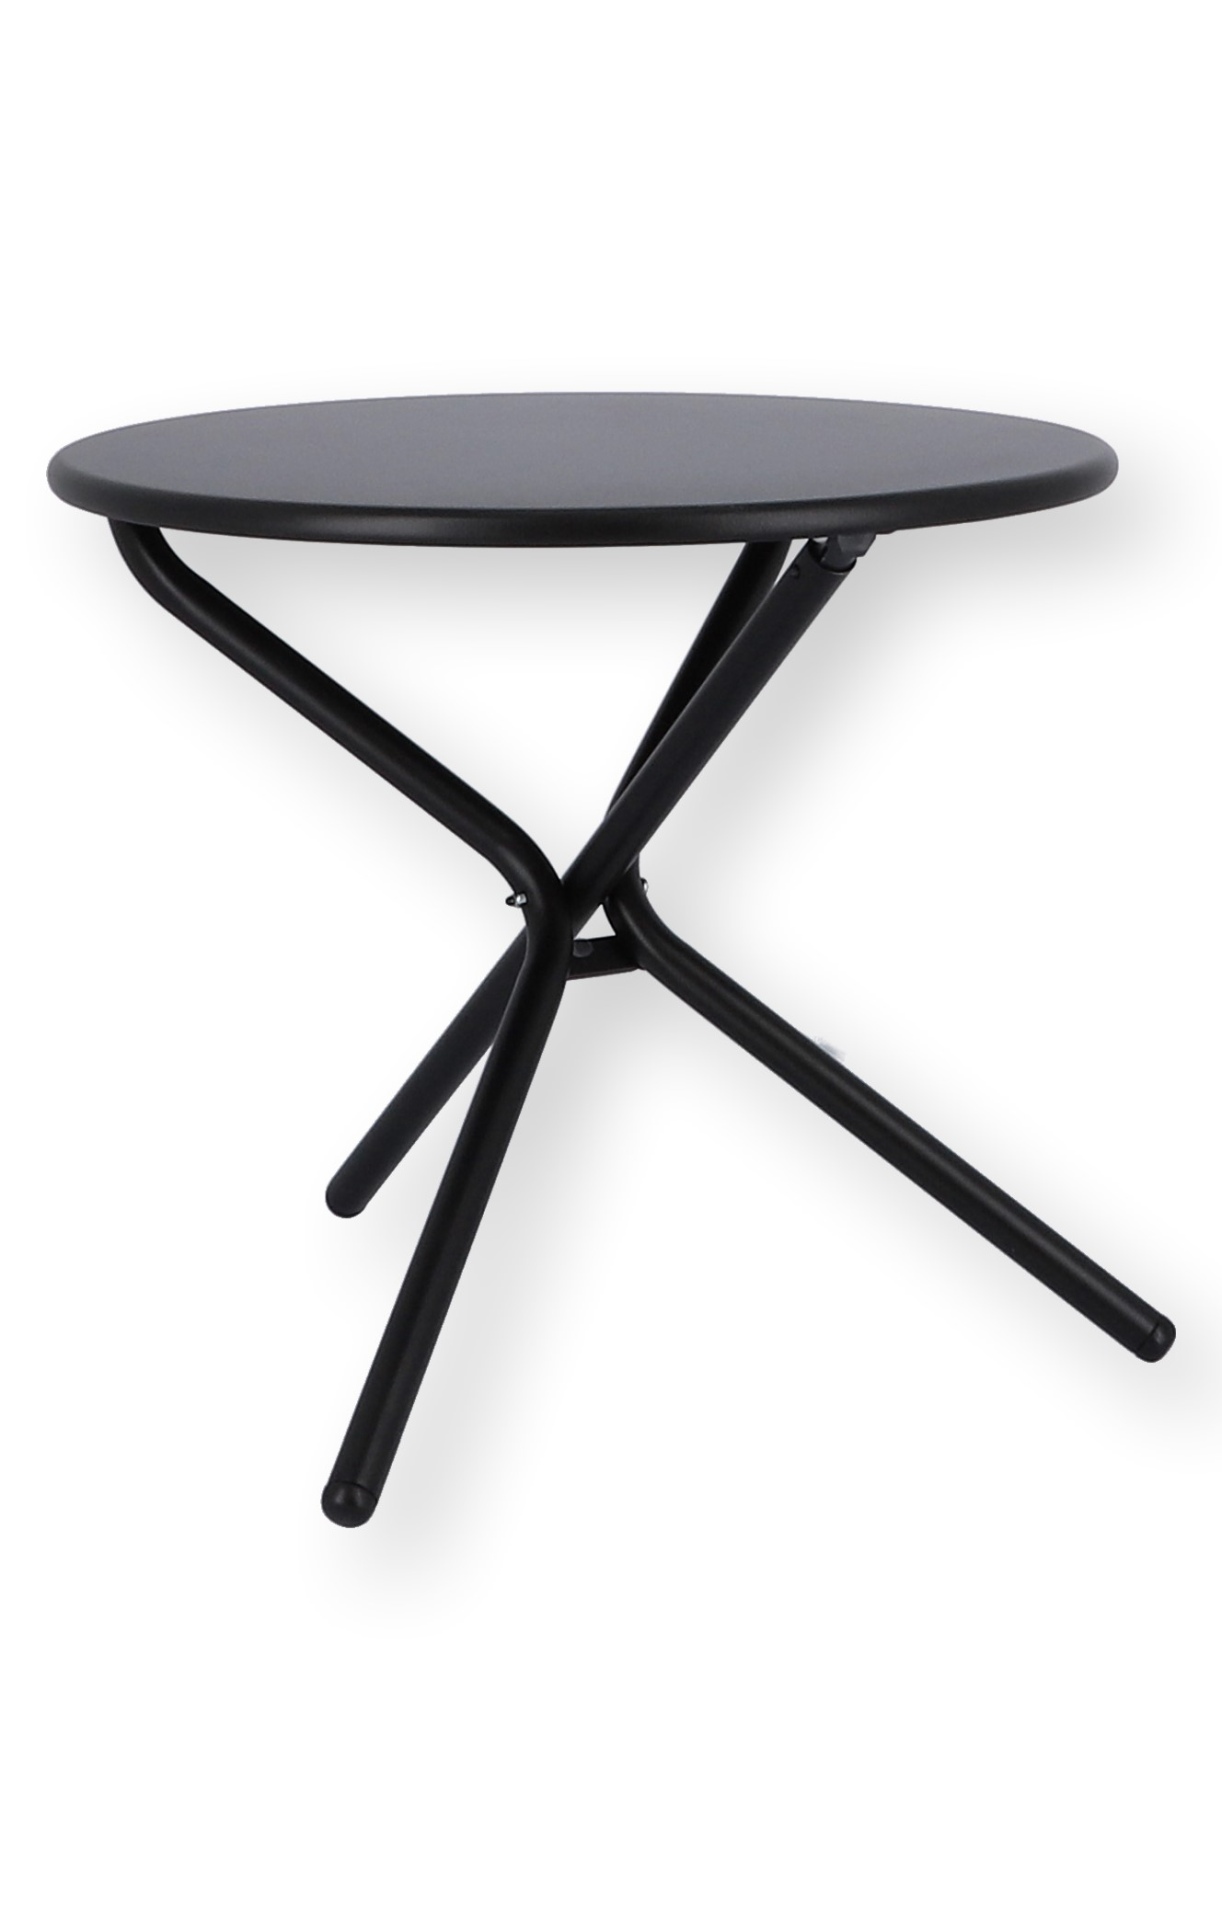 Der Beistelltisch Tris wurde aus Aluminium gefertigt und ist daher auch für den Outdoor Bereich einsetzbar. Designet wurde der Tisch von der Marke Jan Kurtz. Dieser Tisch hat die Farbe Schwarz.